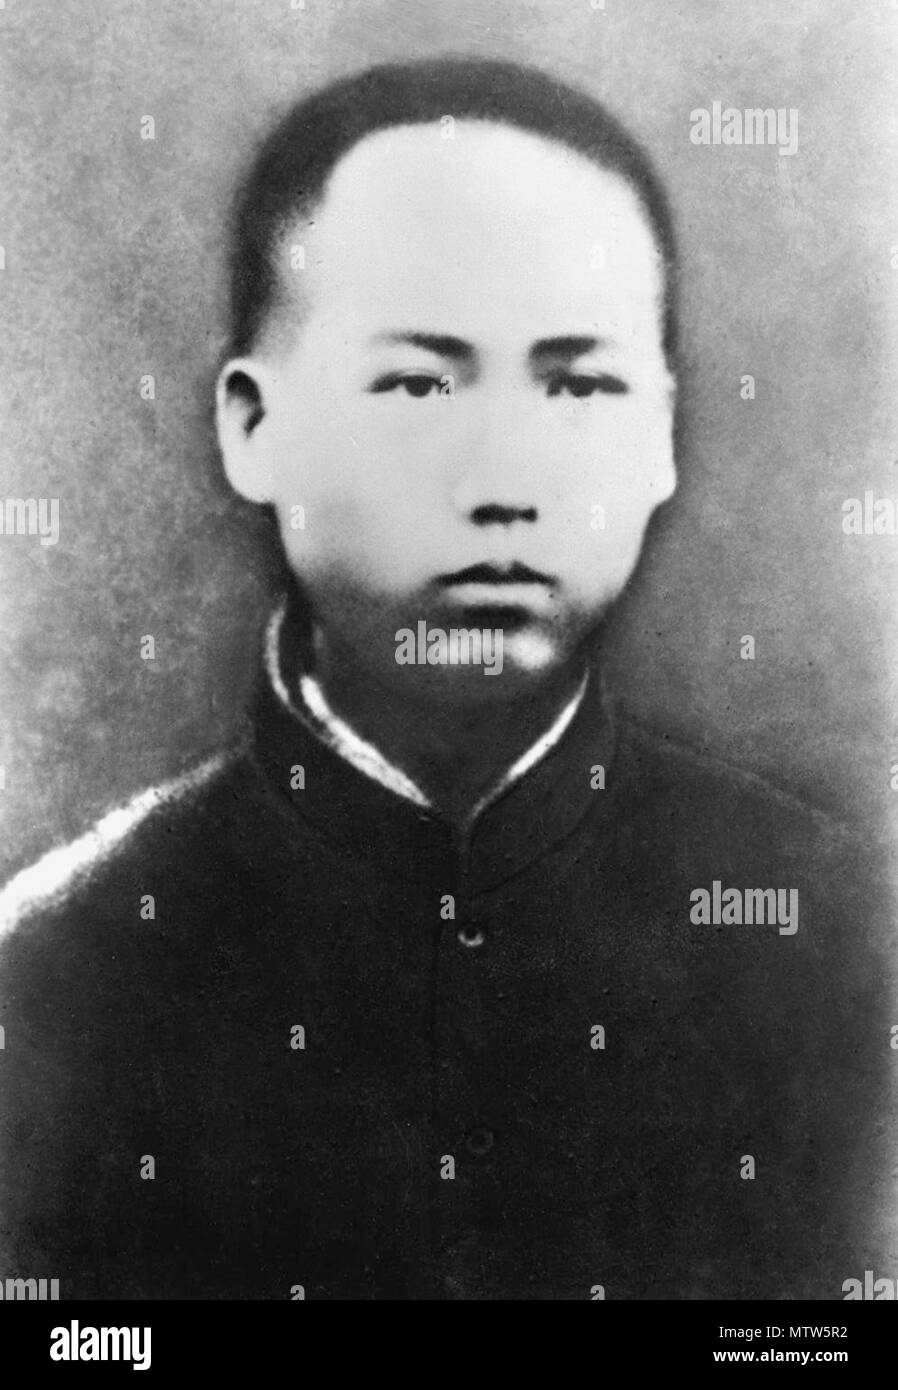 Mao Zedong (1893 - 1976), en 1913, le chinois communiste révolutionnaire qui est devenu le père fondateur de la République populaire de Chine, 1913 Banque D'Images